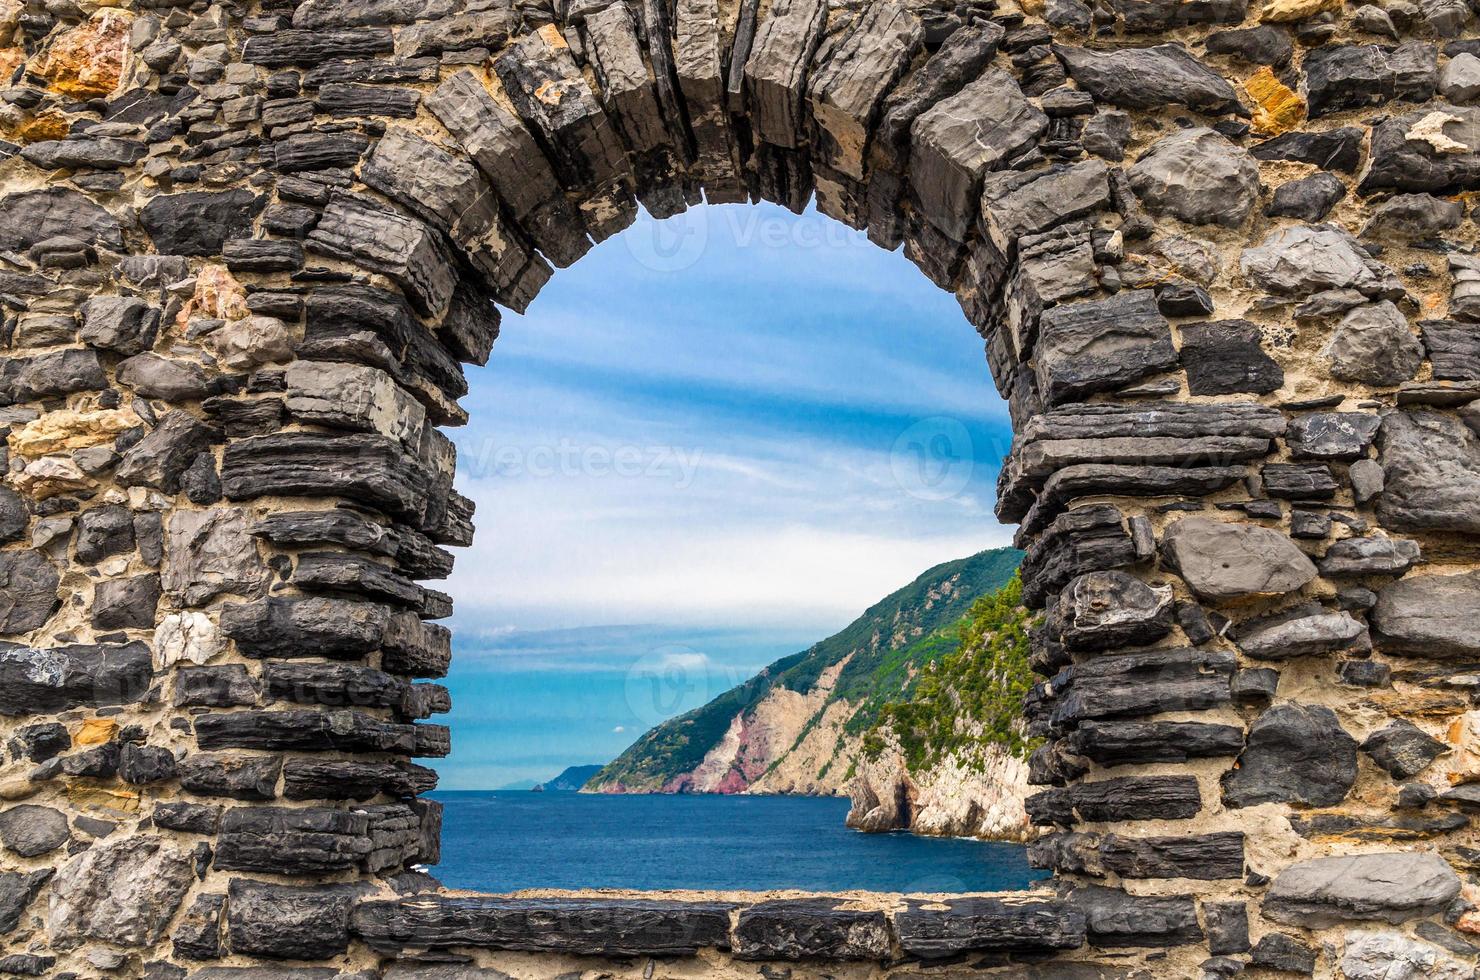 Grotta di lord byron avec eau bleue et côte avec falaise rocheuse à travers la fenêtre du mur de pierre, ville de portovenere photo